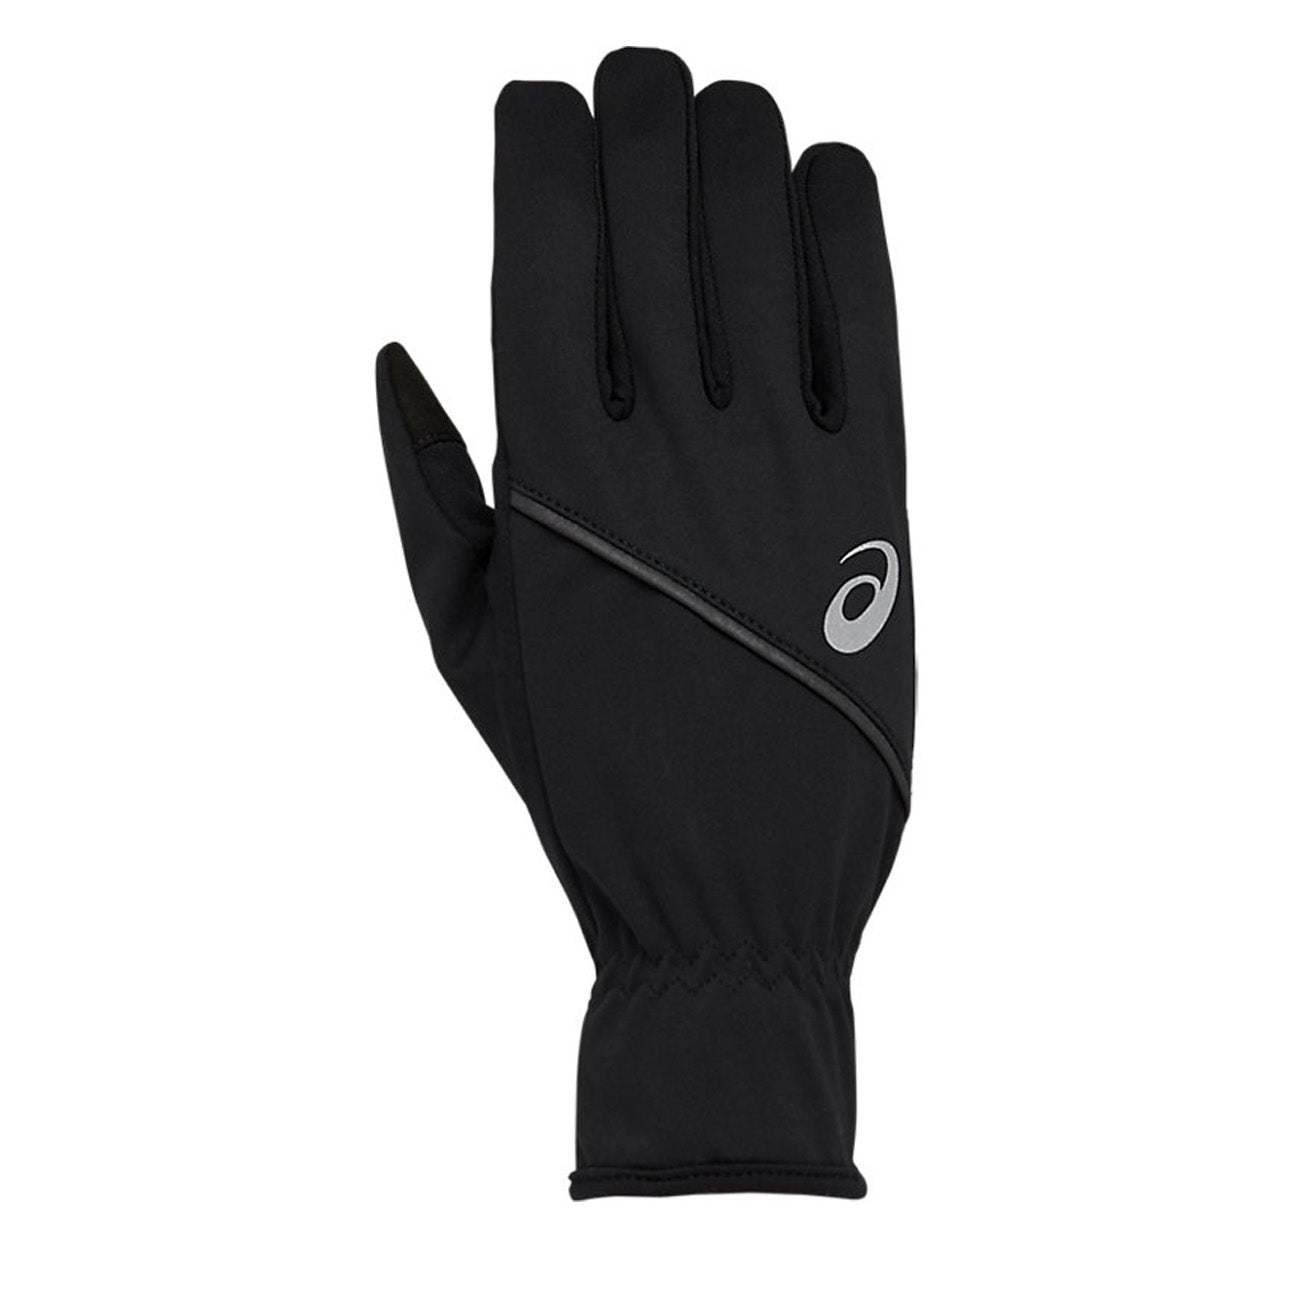 Asics Performance Thermal Gloves Runster – Black